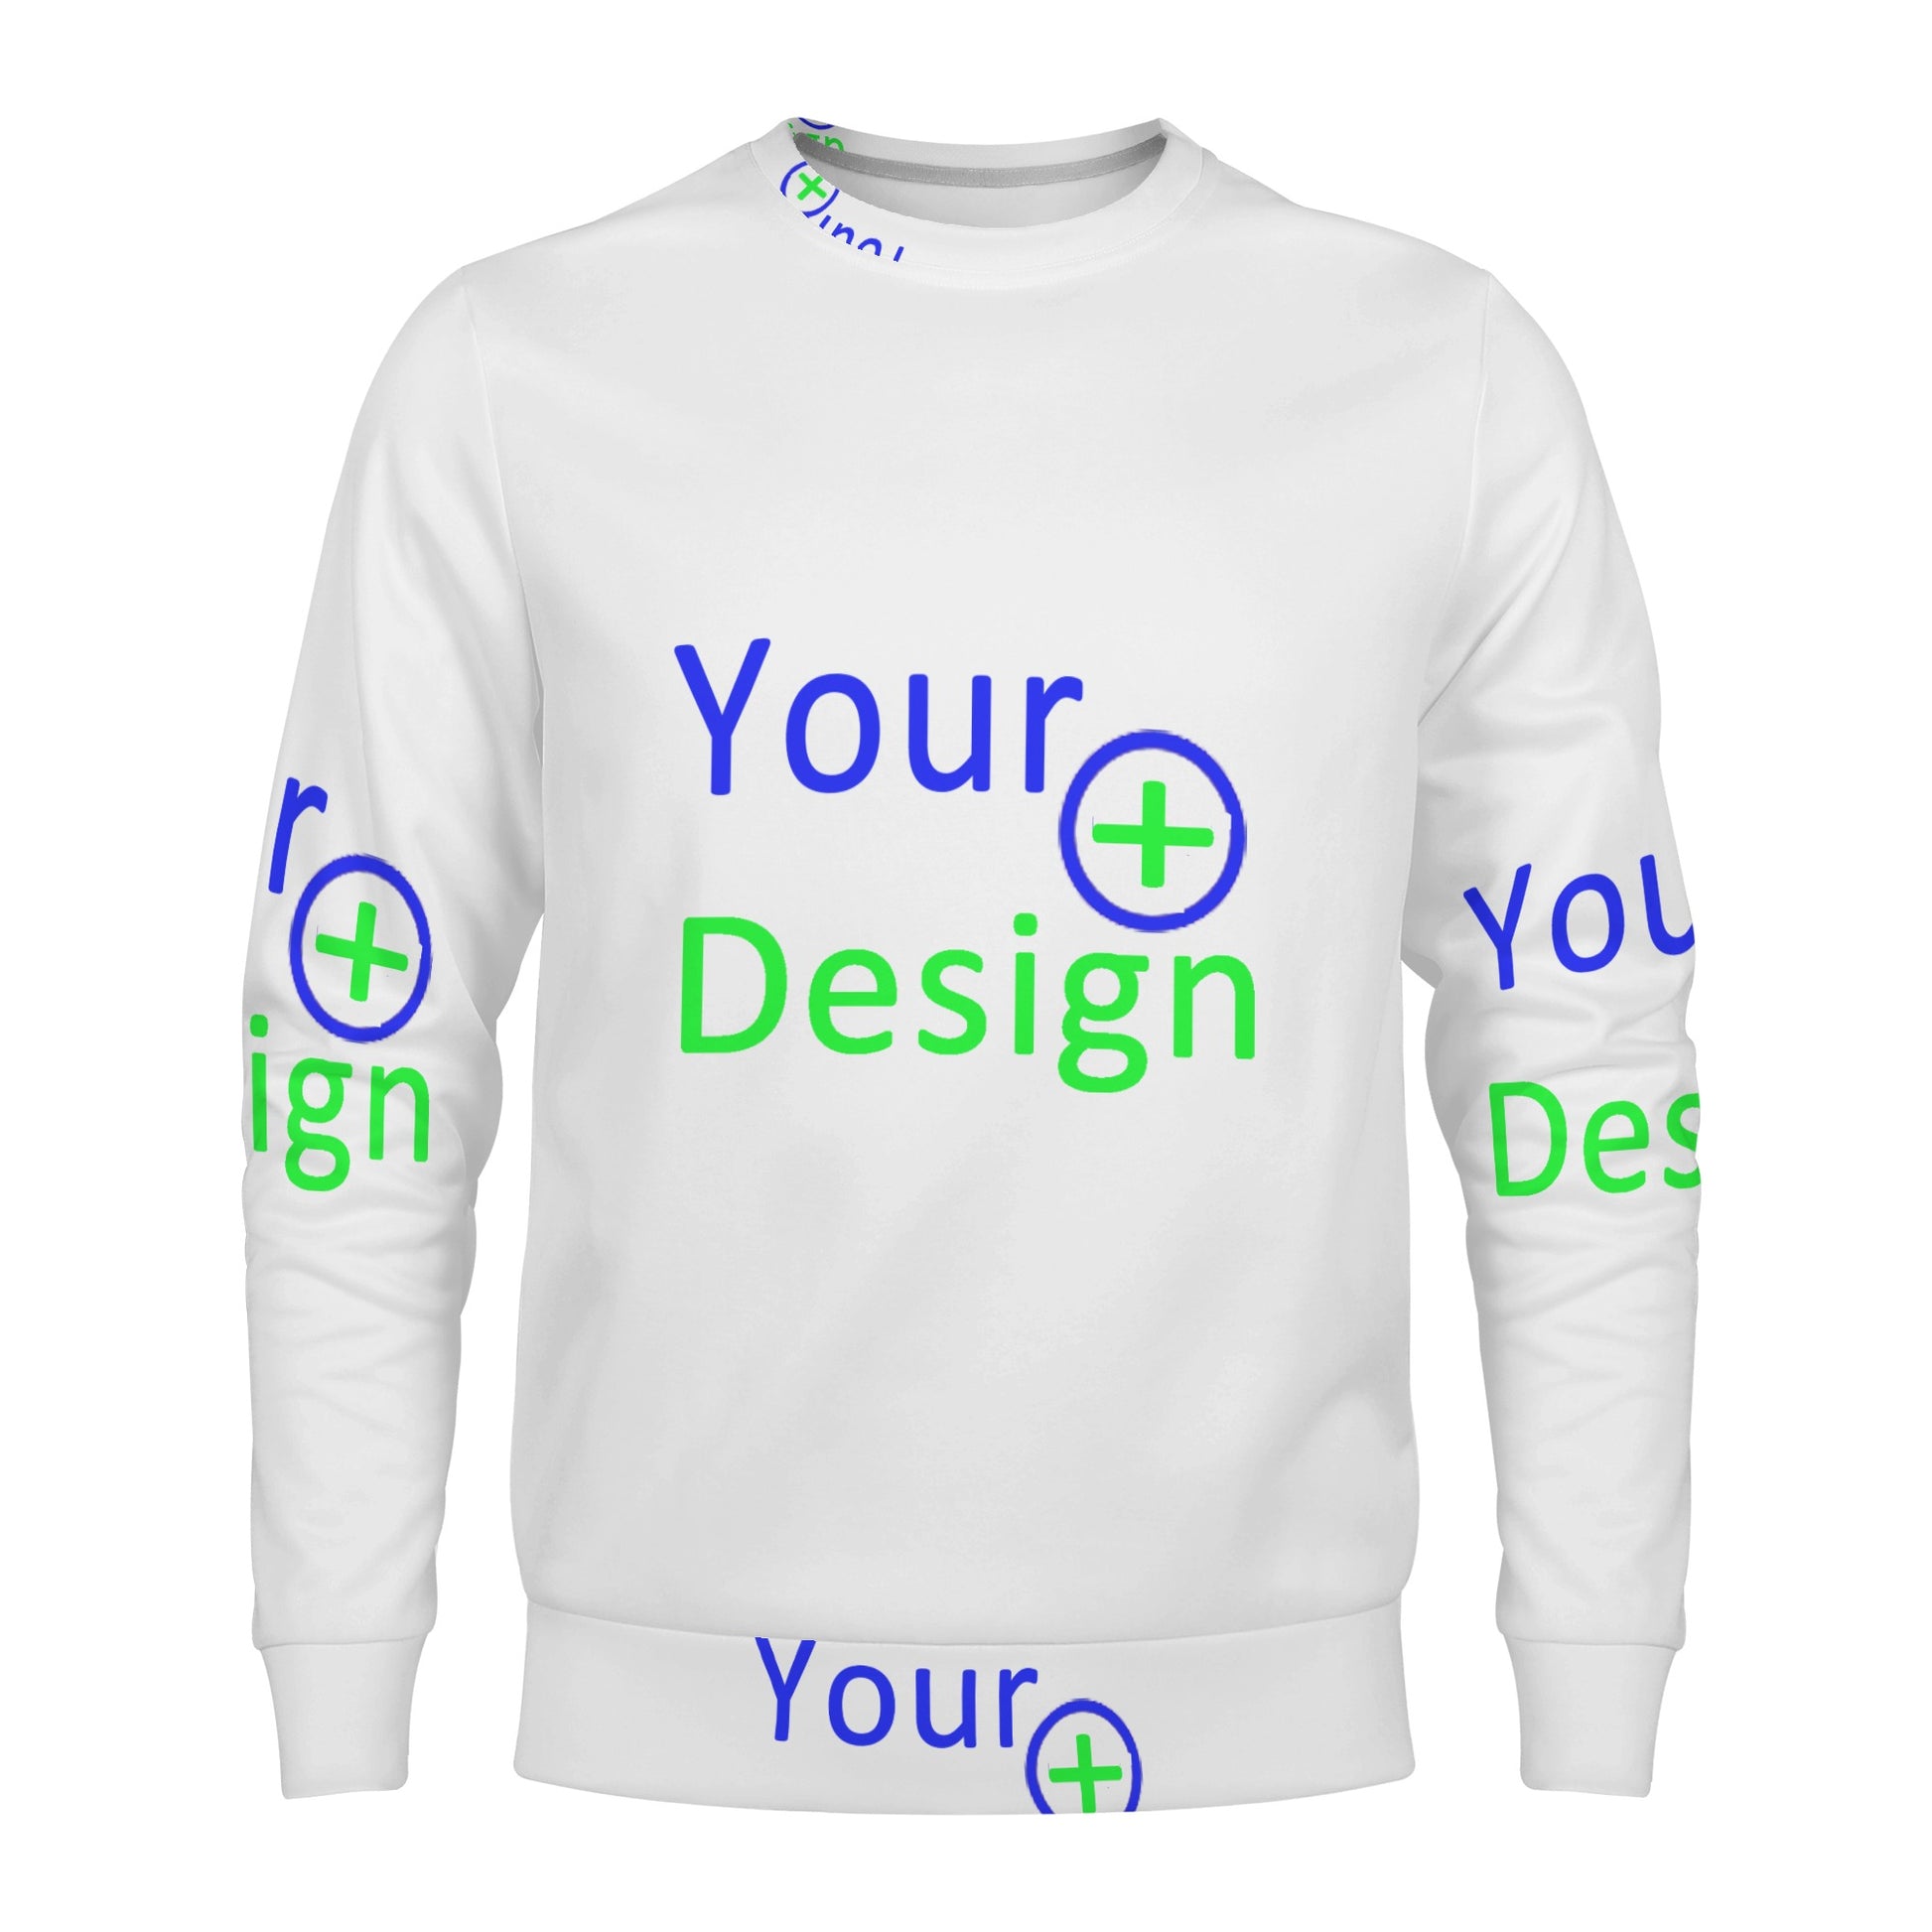 Mens All Over Print Crew Neck Sweatshirt--Your design 